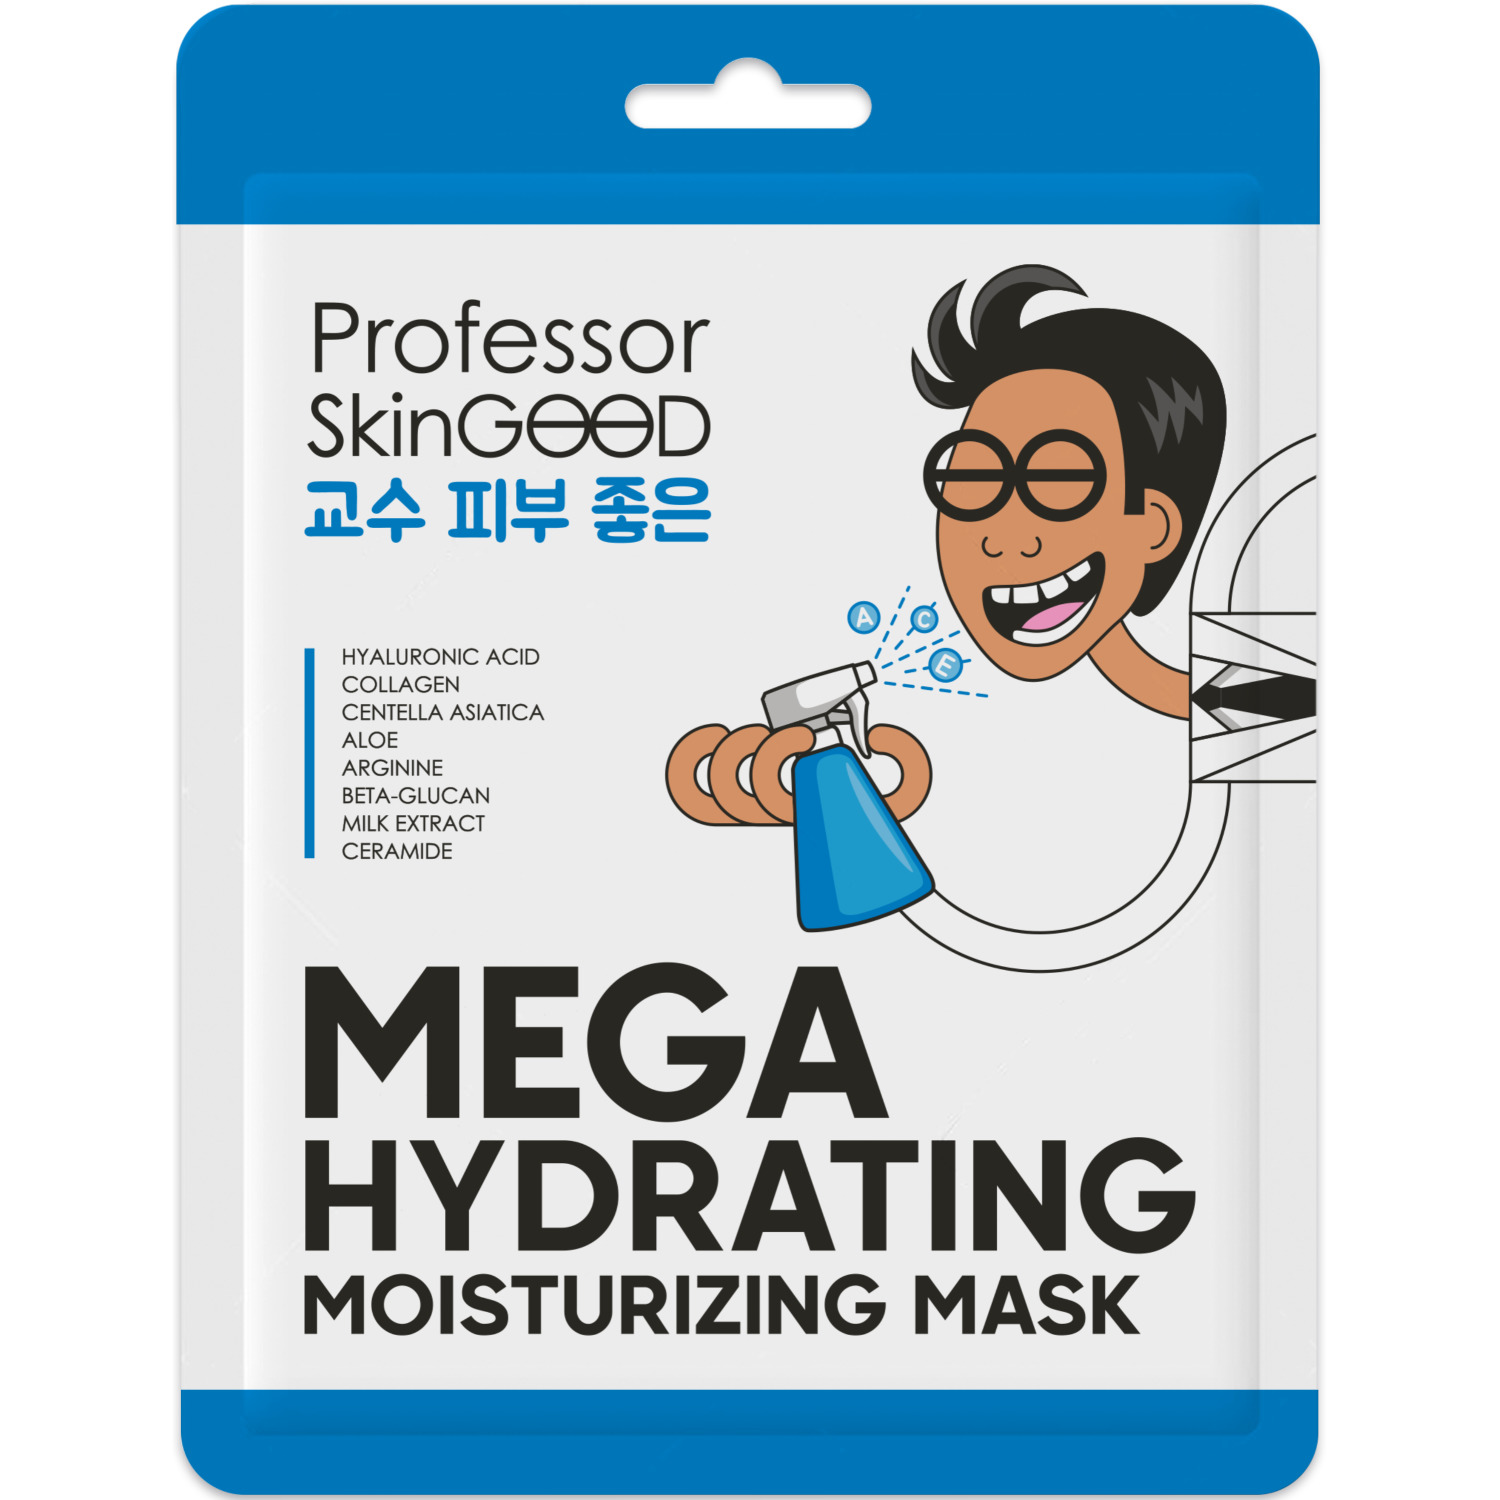 Маска для лица Professor SkinGood Hydrating Moisturizing увлажняющая 1 шт скраб для лица матирующий с углем и салициловой кислотой 2x7мл саше